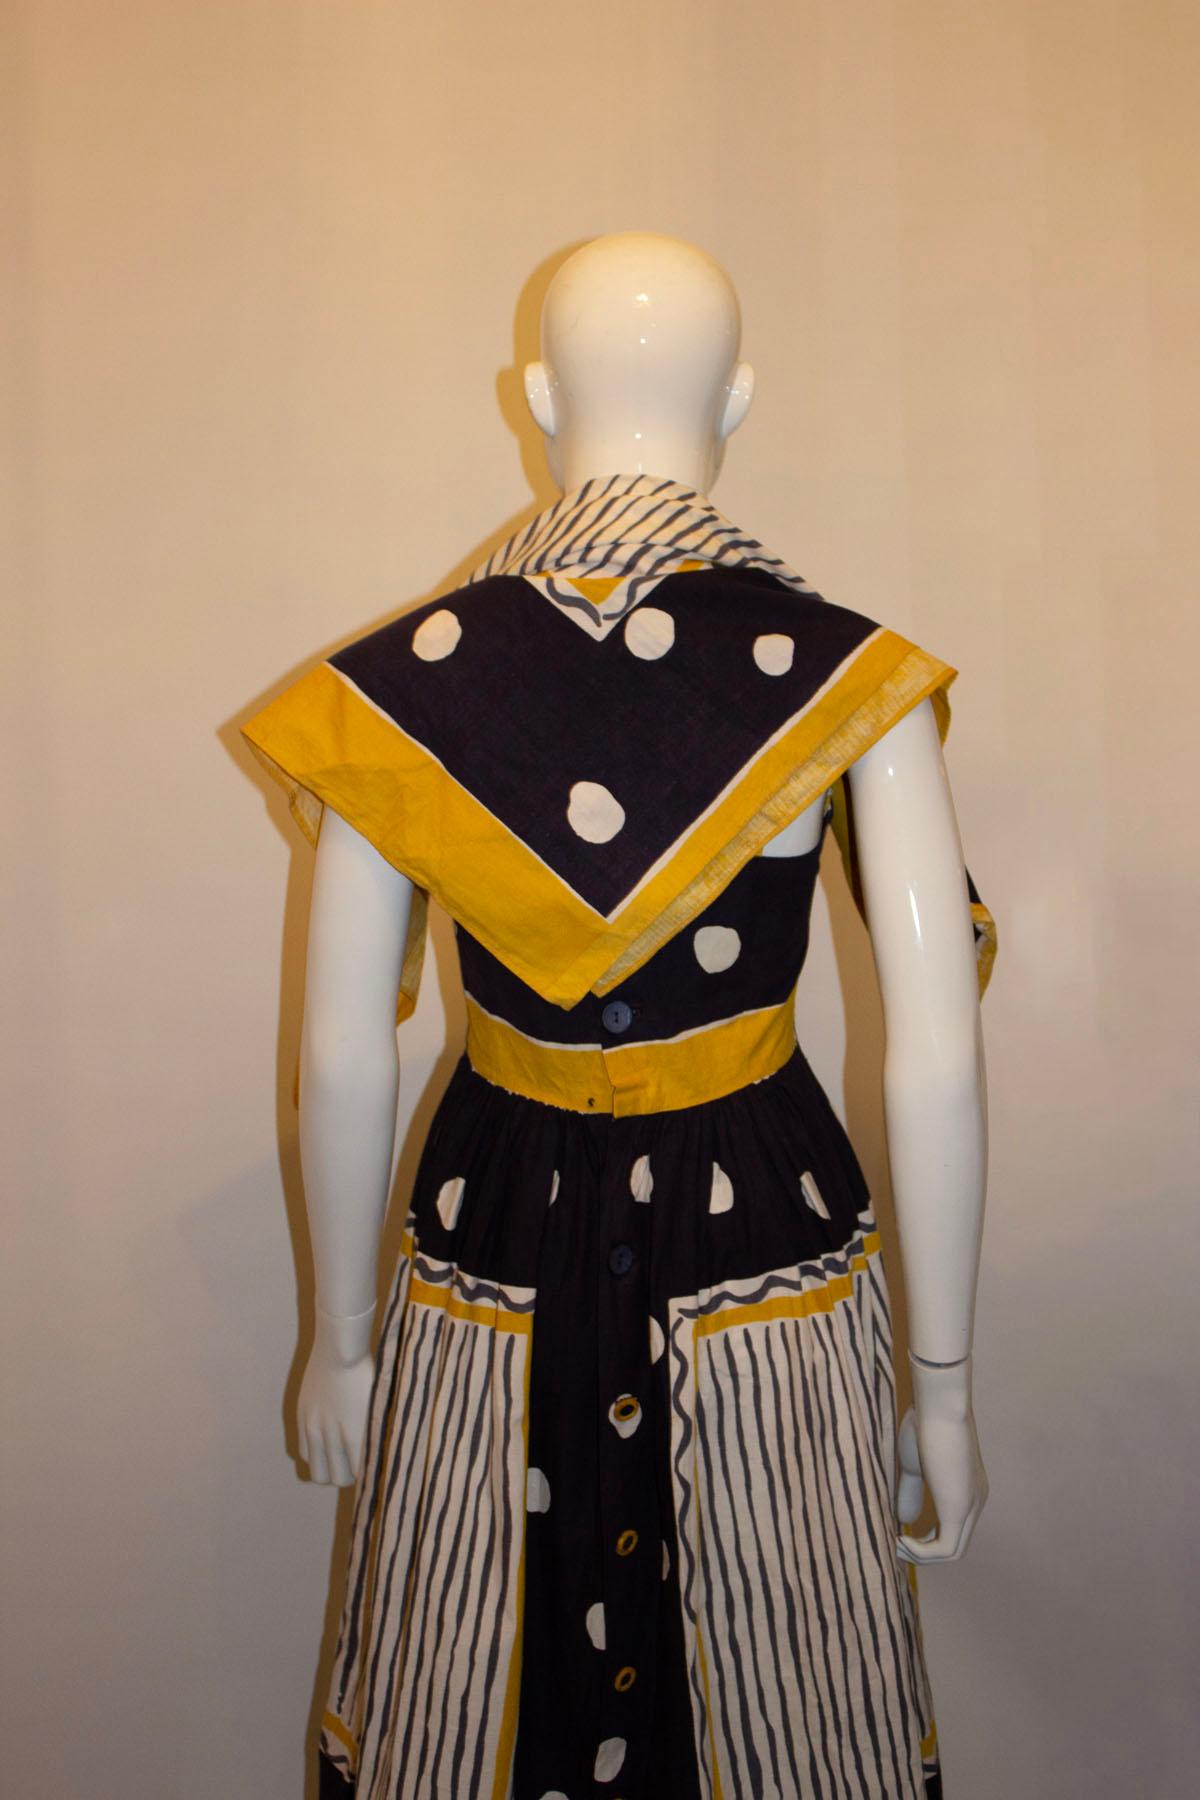 Ein wunderschönes Vintage-Sonnenkleid aus Baumwolle von Sambo of London. Das Kleid ist in einer wunderschönen Farbkombination aus Blau, Weiß, Senf und Grau gehalten. Es hat tolle Taschendetails auf der Vorderseite und eine Knopföffnung auf der